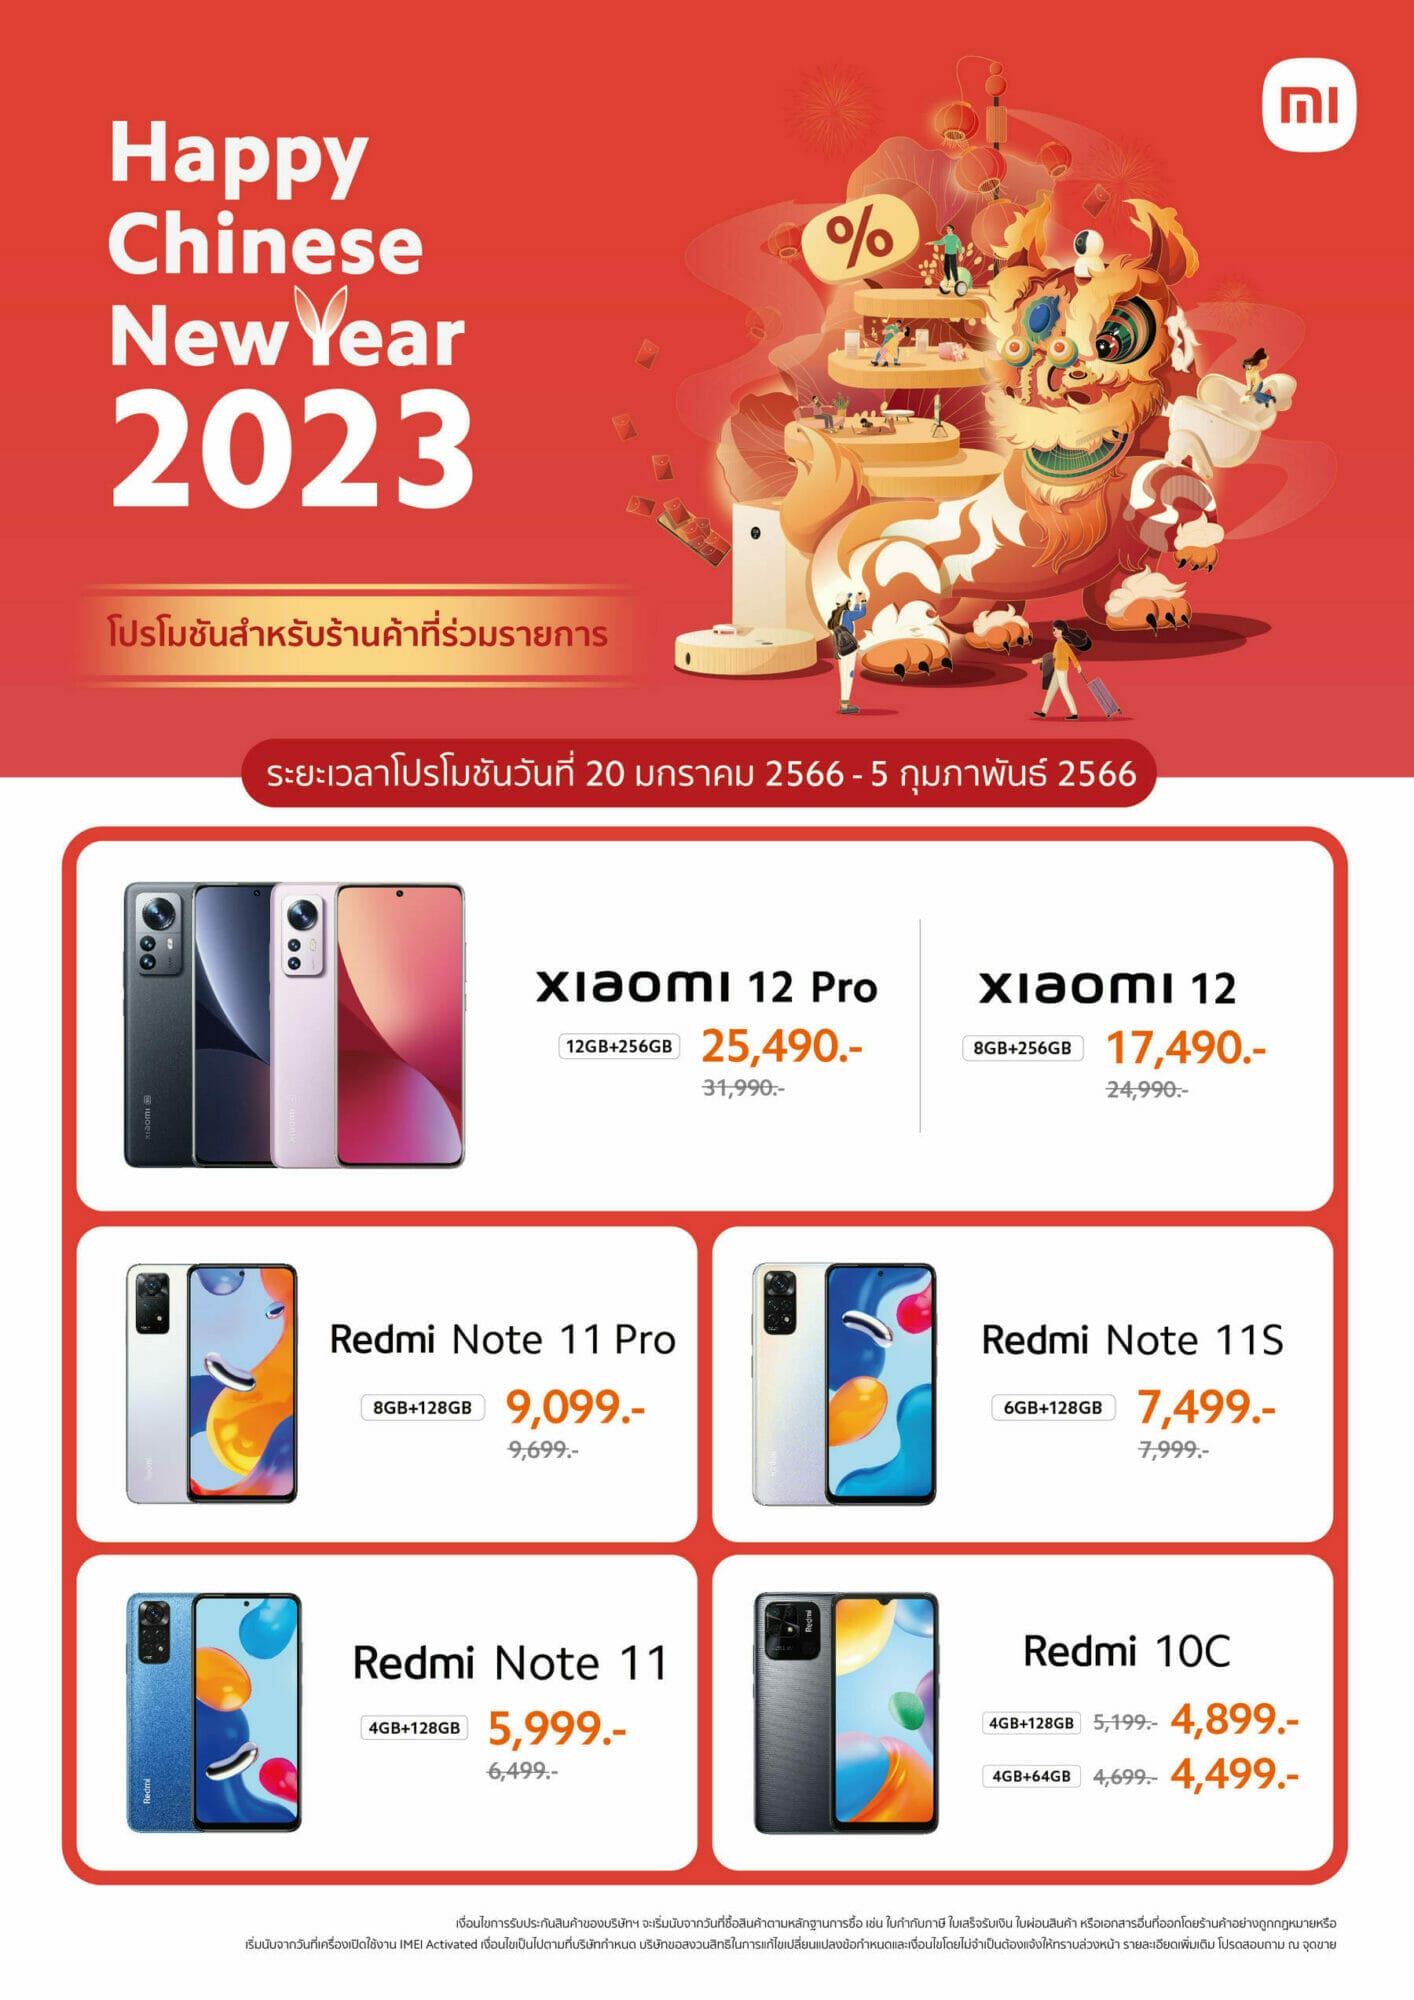 Xiaomi จัดโปรโมชัน Chinese New Year พบราคาพิเศษจากสมาร์ทโฟนและผลิตภัณฑ์ AIoT มากมาย ระหว่างวันที่ 20 ม.ค. - 5 ก.พ. 2566